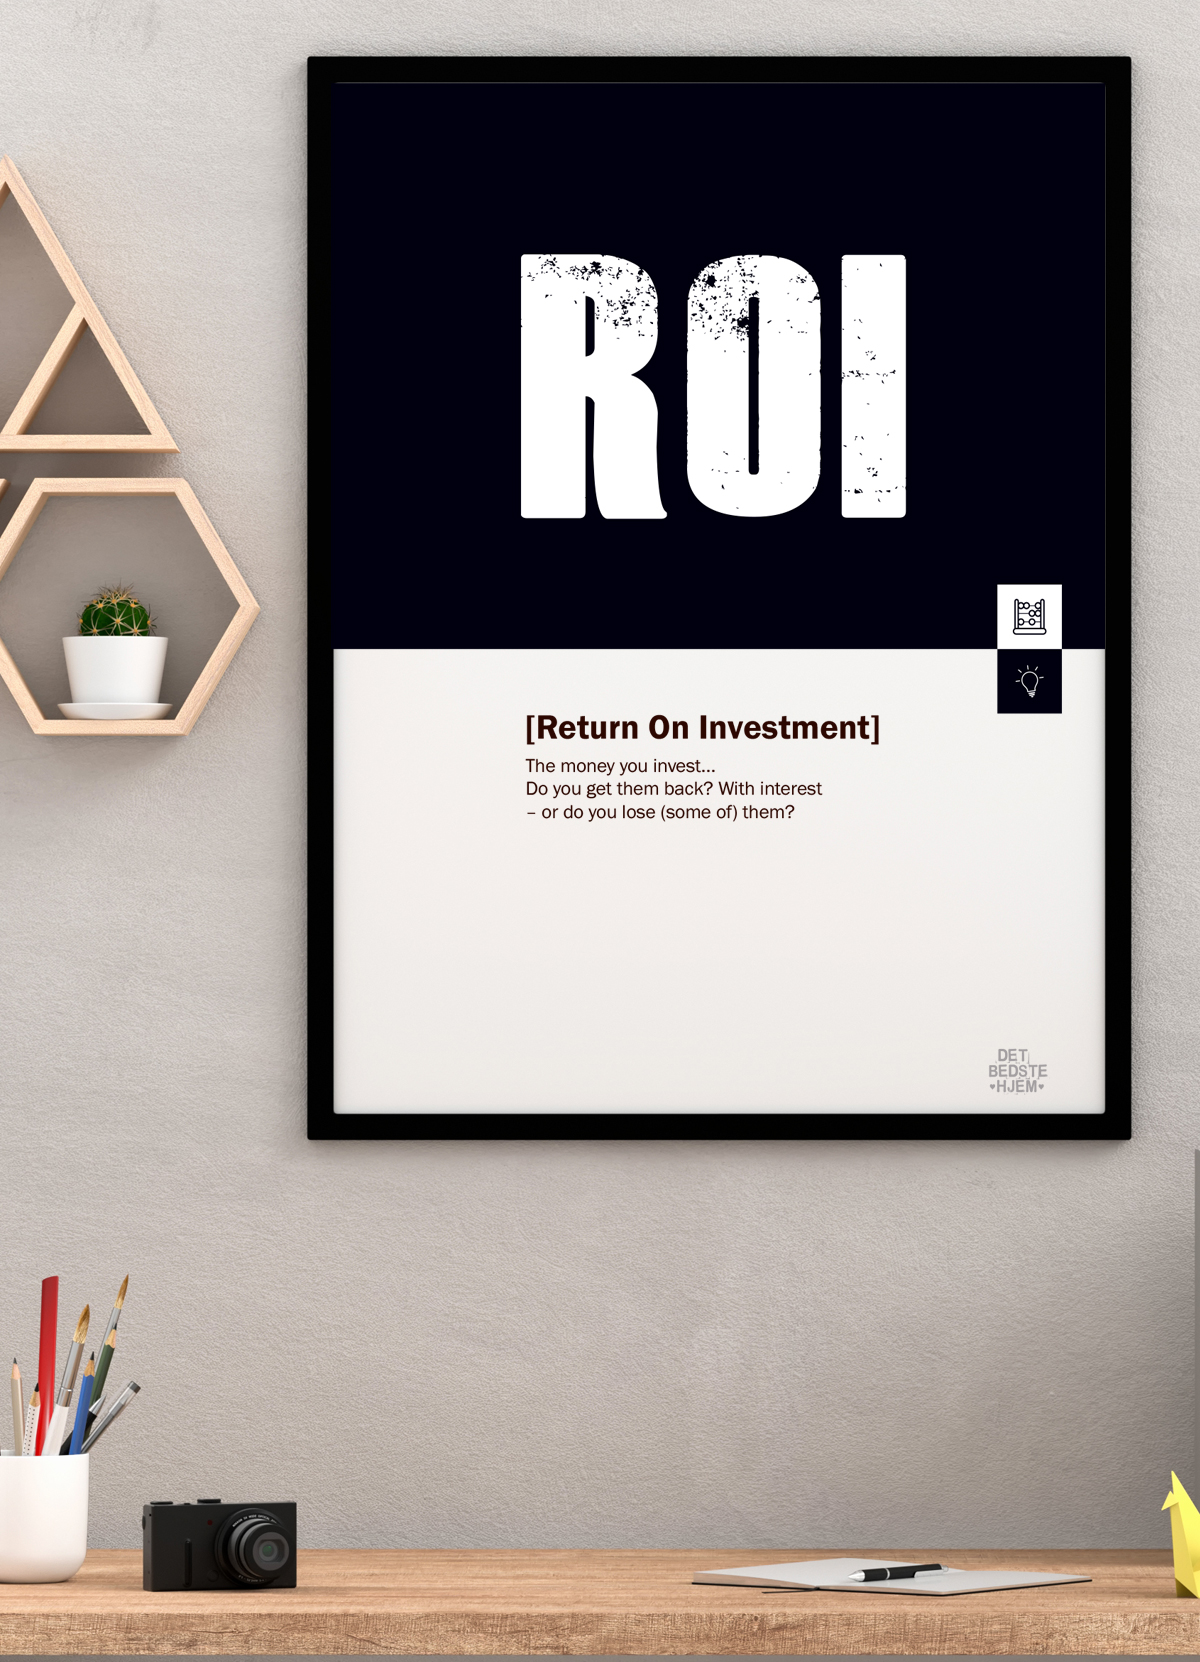 Se ROI-marketing-plakat - 70 x 100 cm - Kr. 349,- hos Detbedstehjem.dk